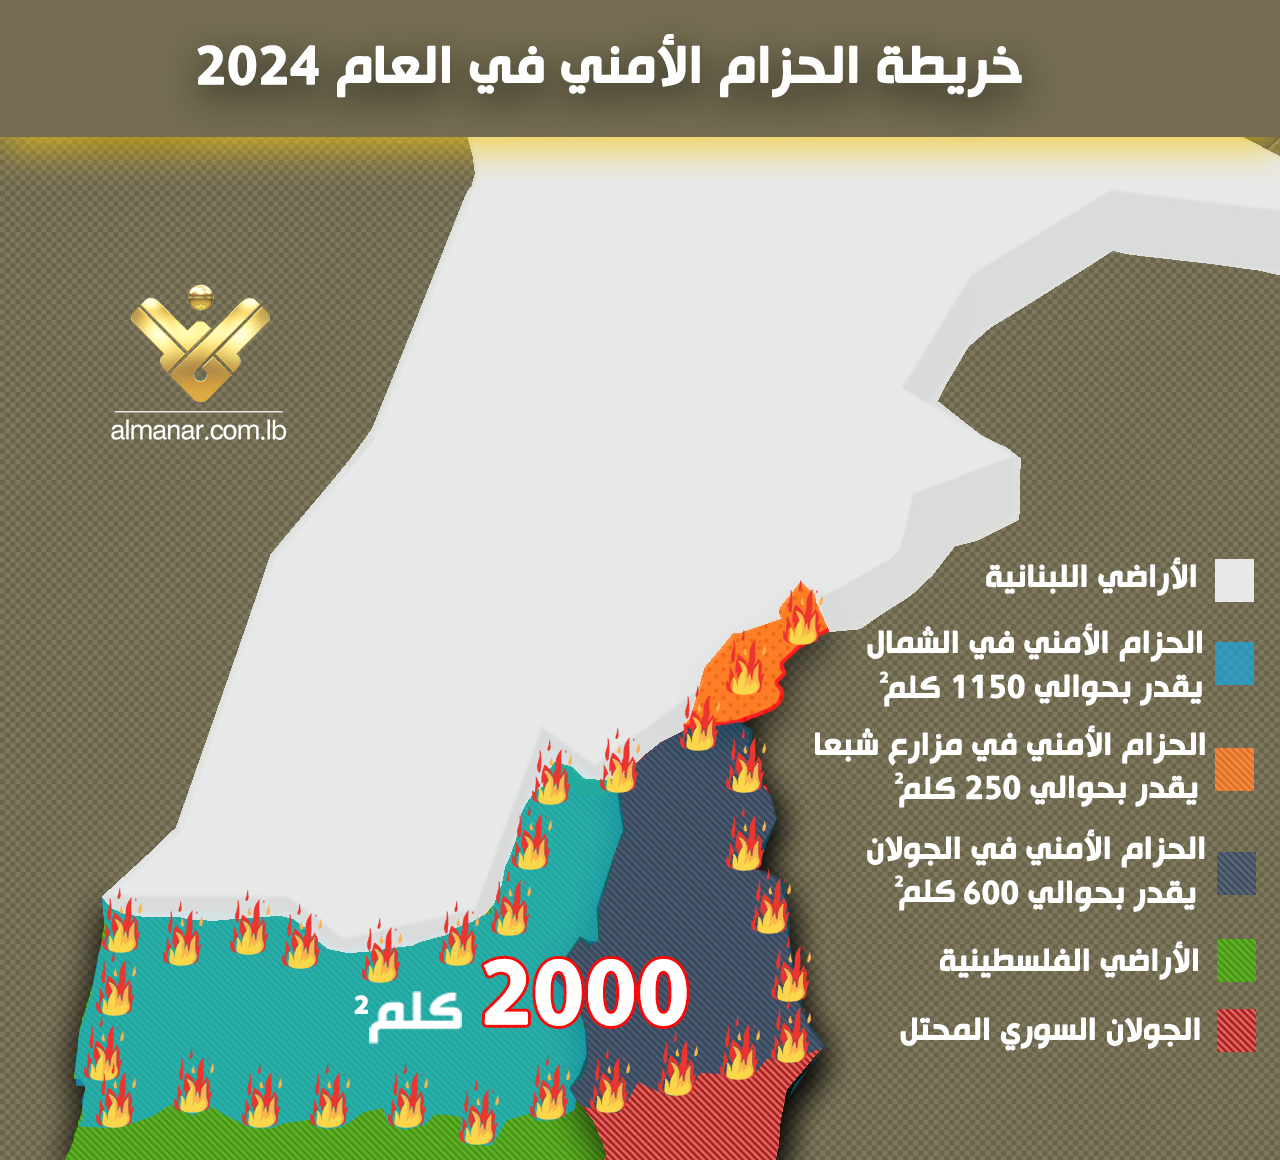 خريطة إحصائية تُظهر توزع مساحة الحزام الأمني في شمال فلسطين المحتلة البالغة 2000 كلم2.